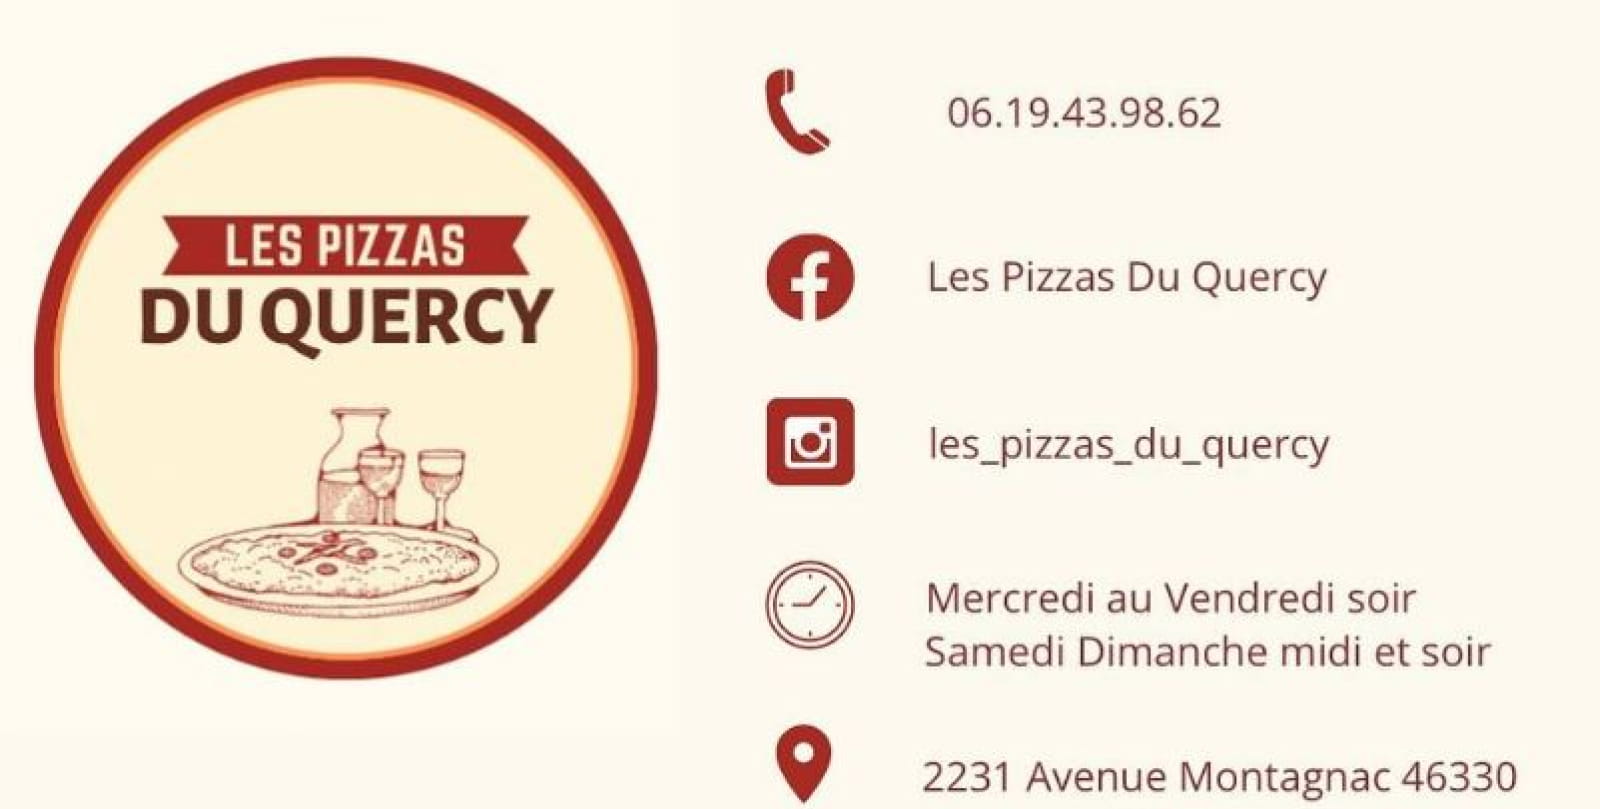 Les Pizzas du Quercy